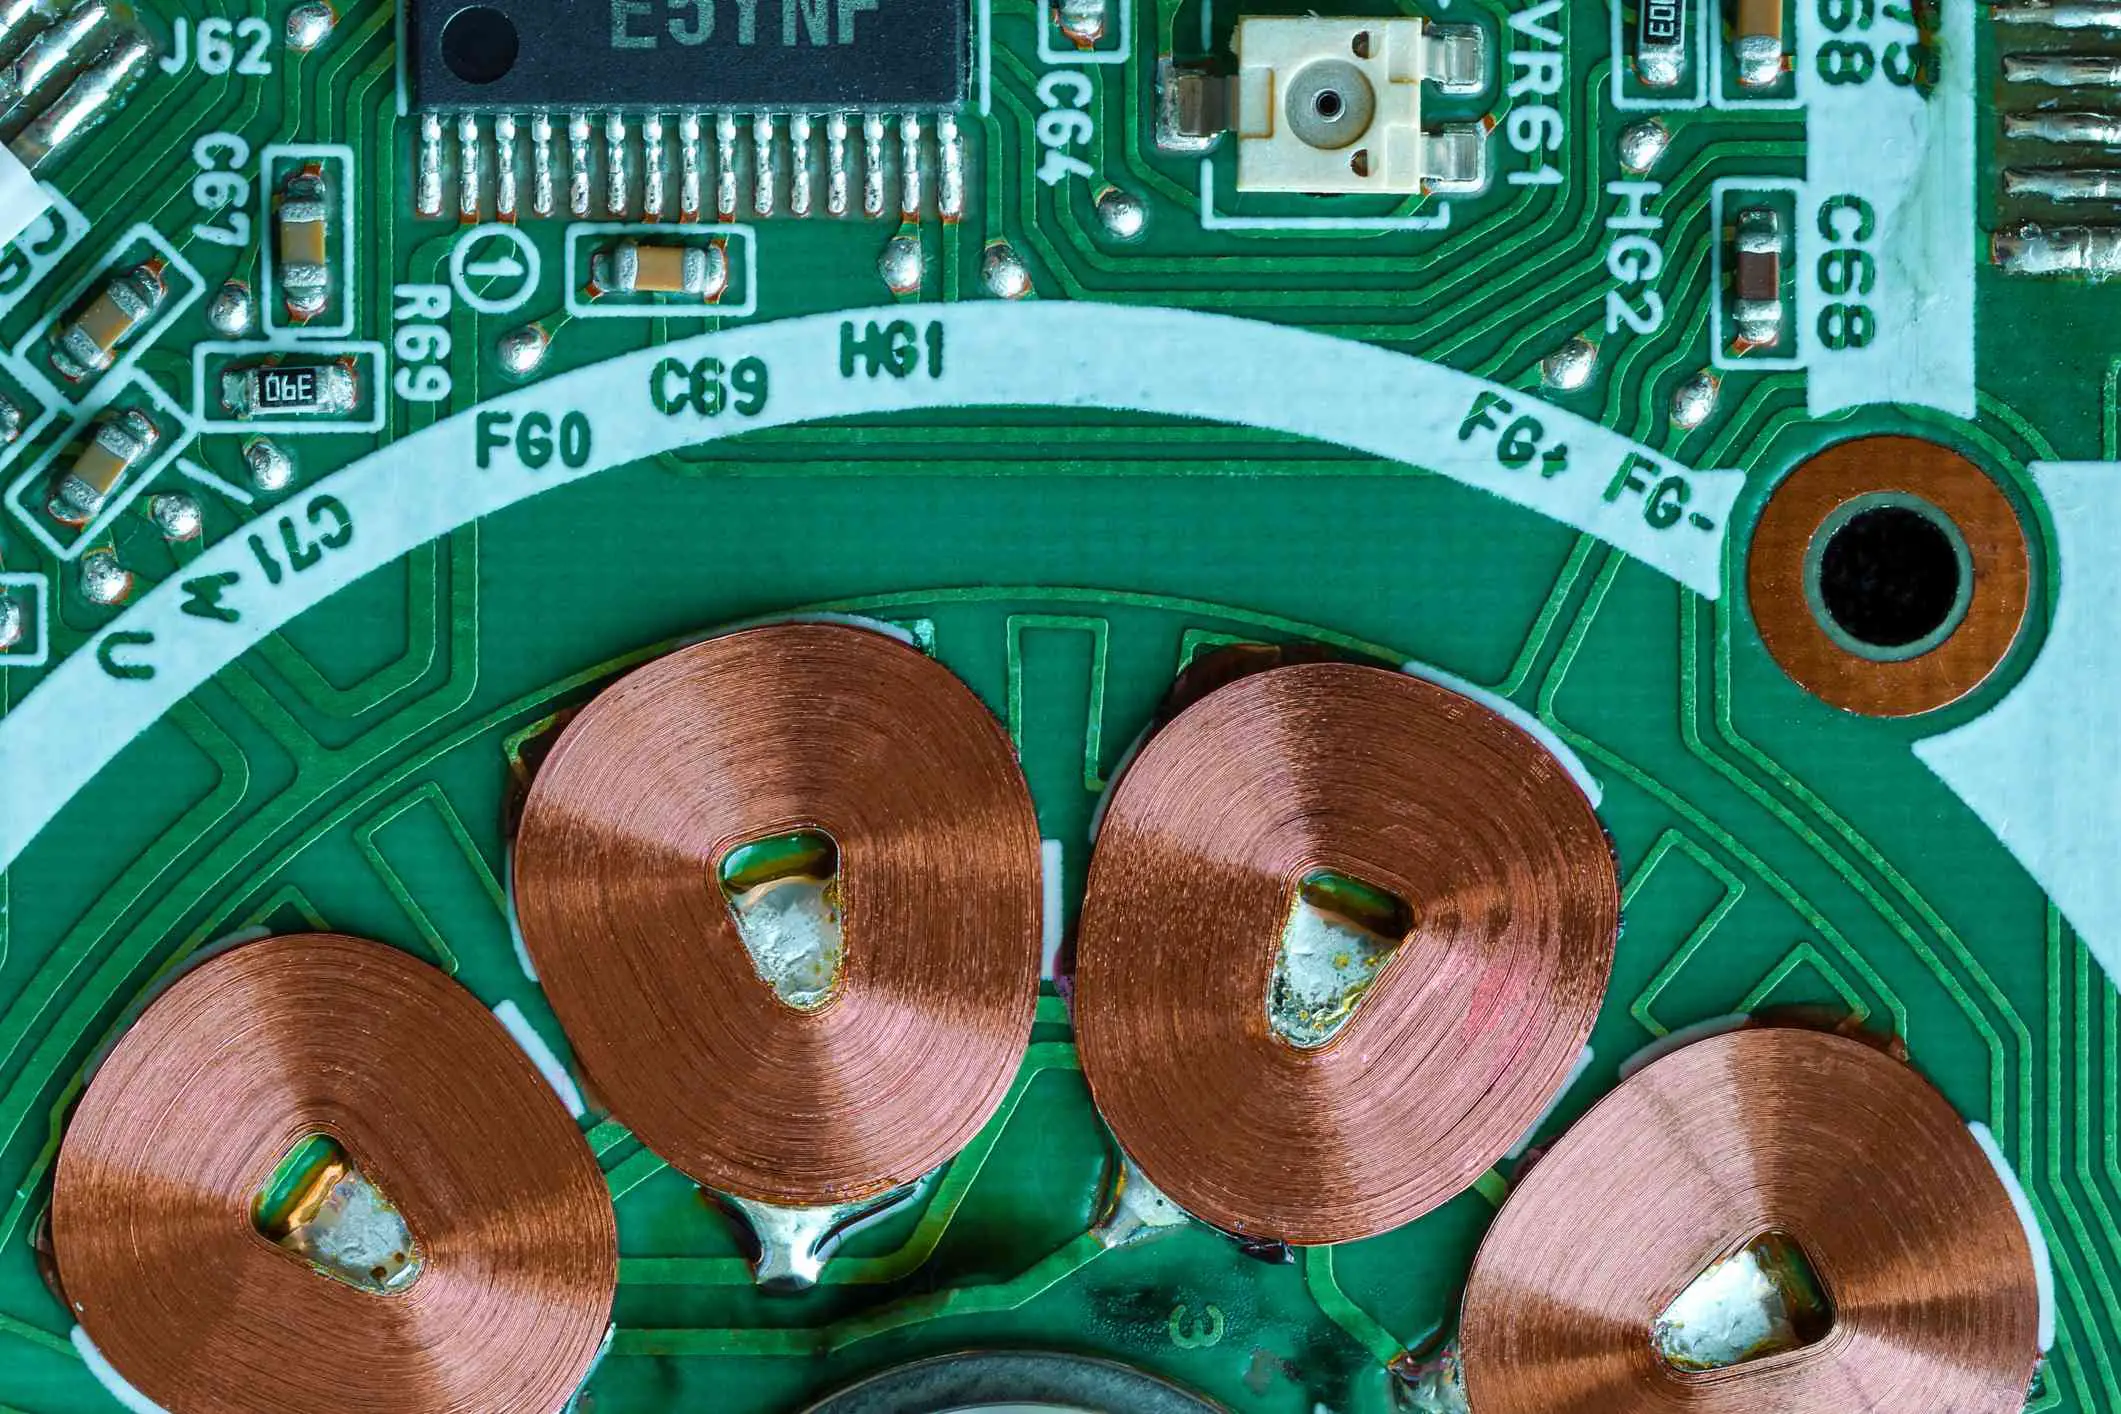 Filmado de cima de uma placa de circuito mostrando bobinas de cobre